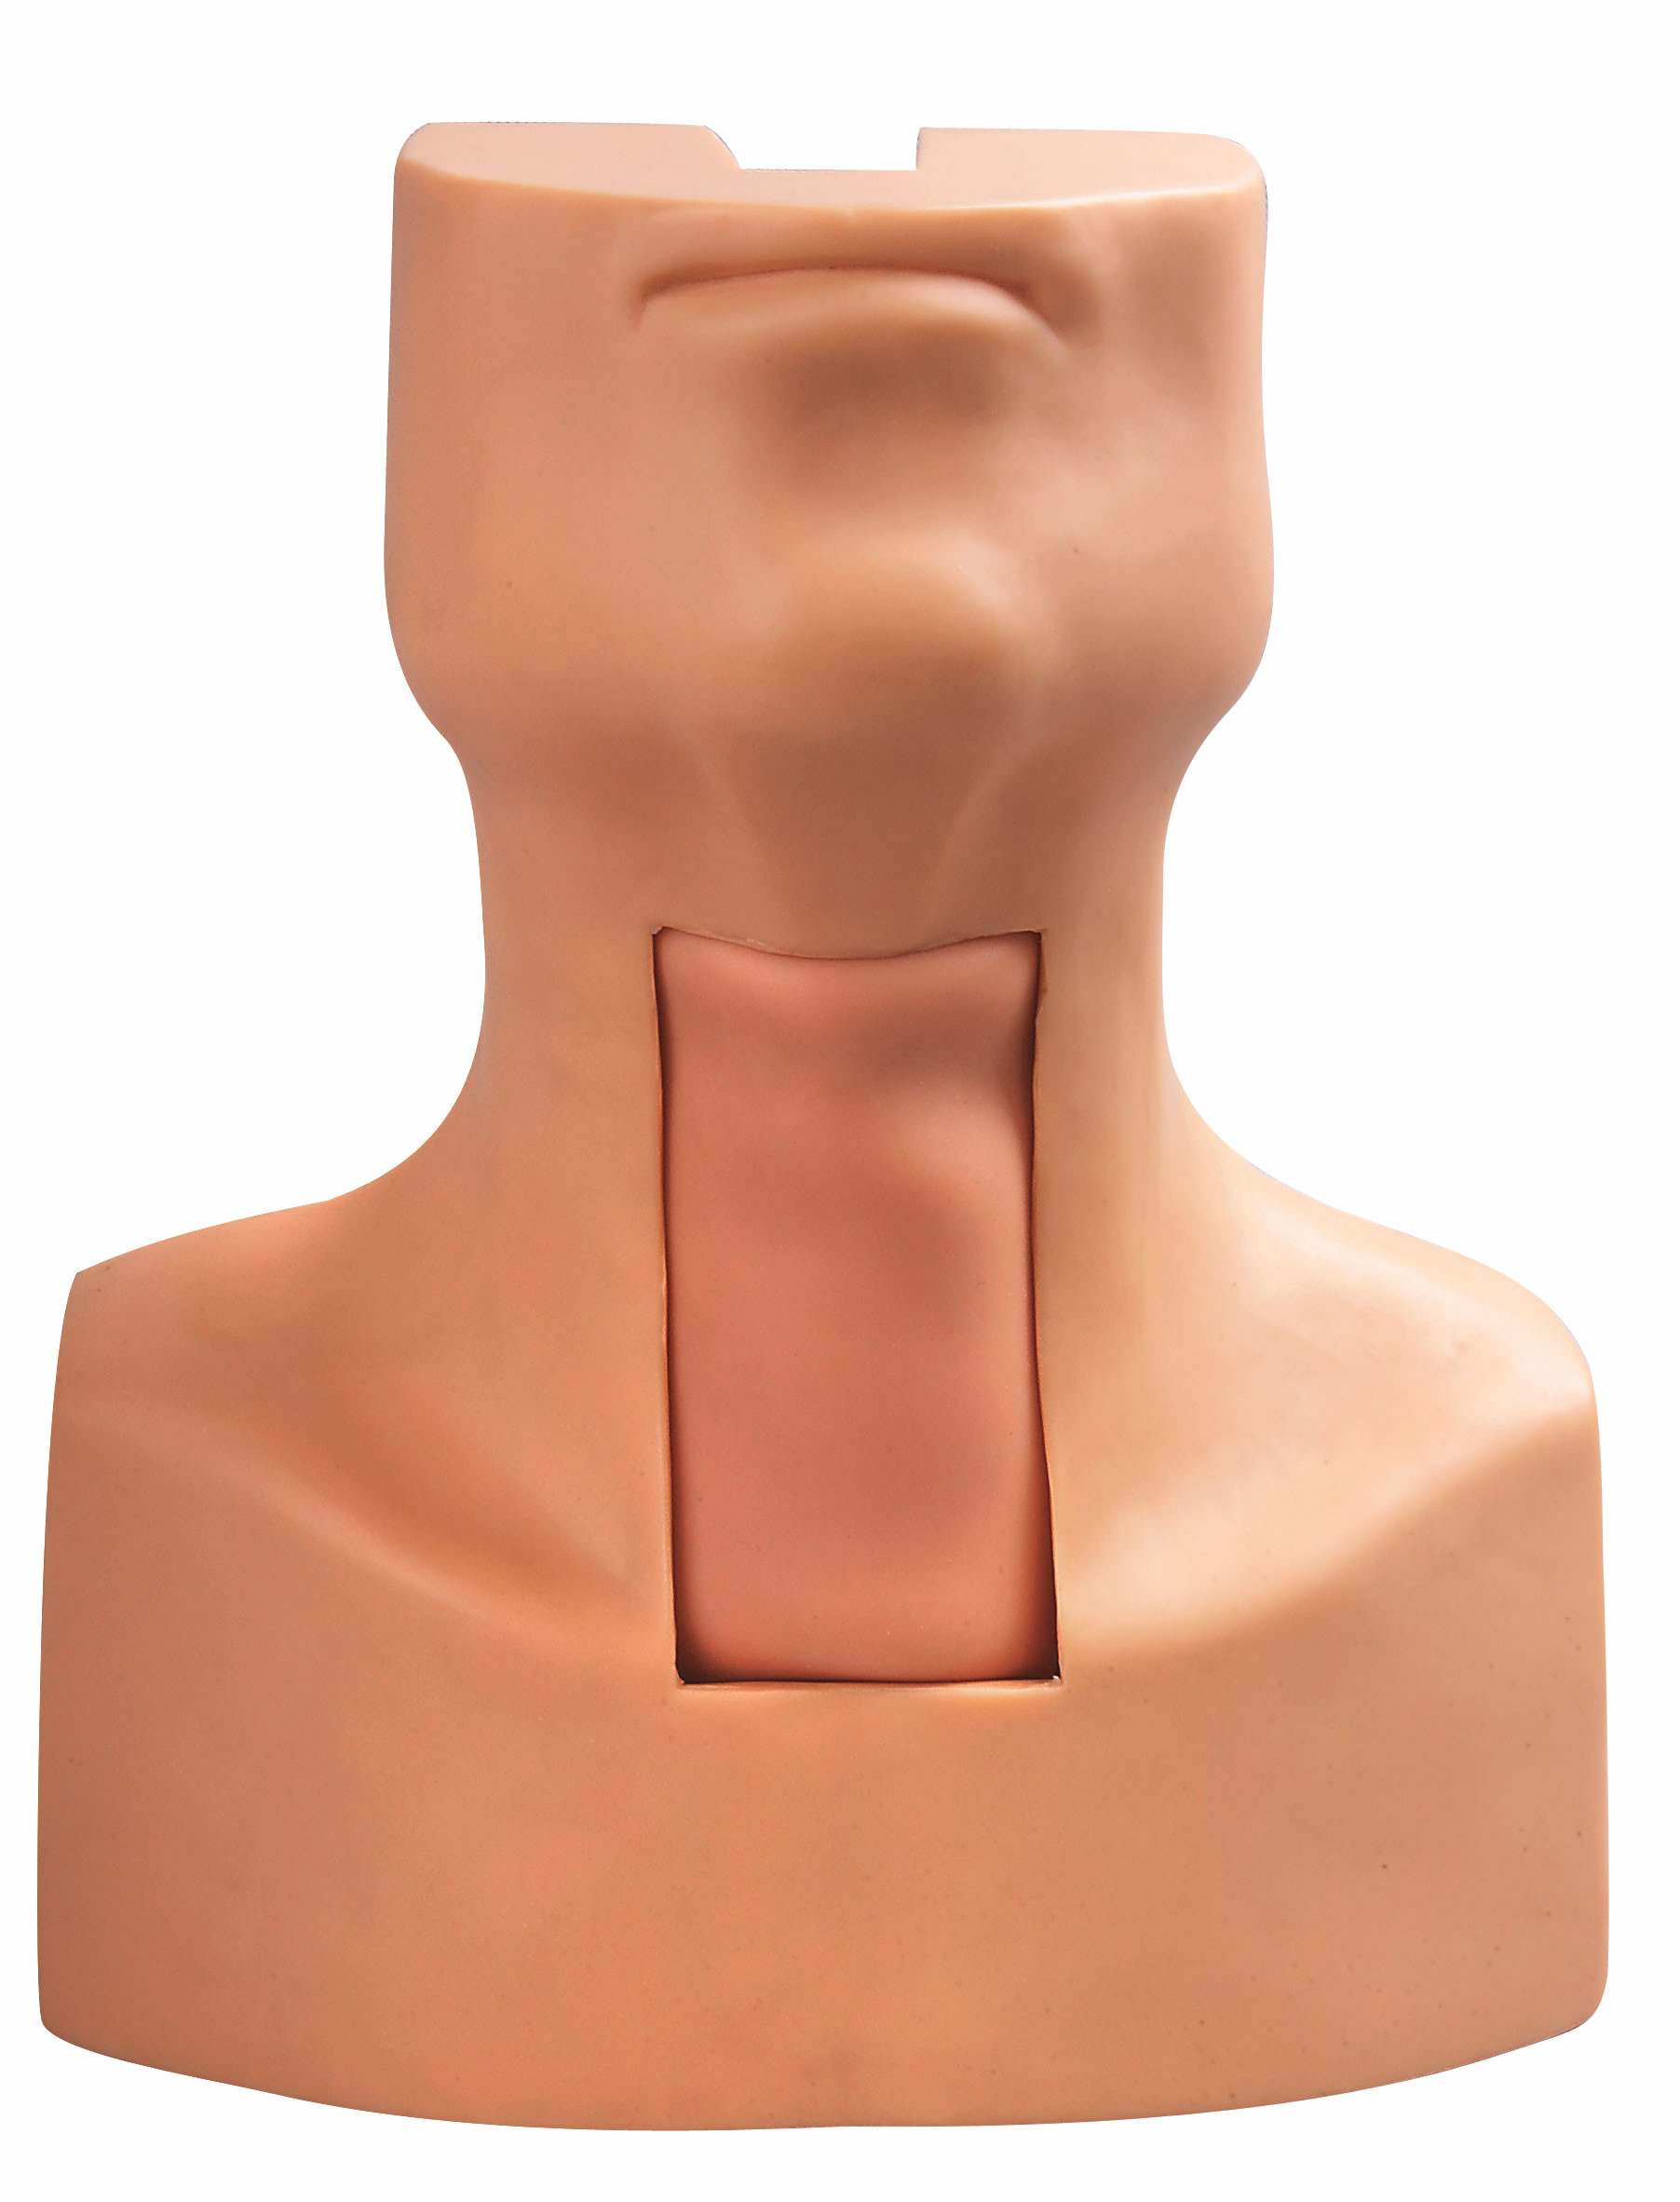 Modelo de la intubación de la puntura de la traqueotomía con la piel simulada de la tráquea y del cuello para entrenar